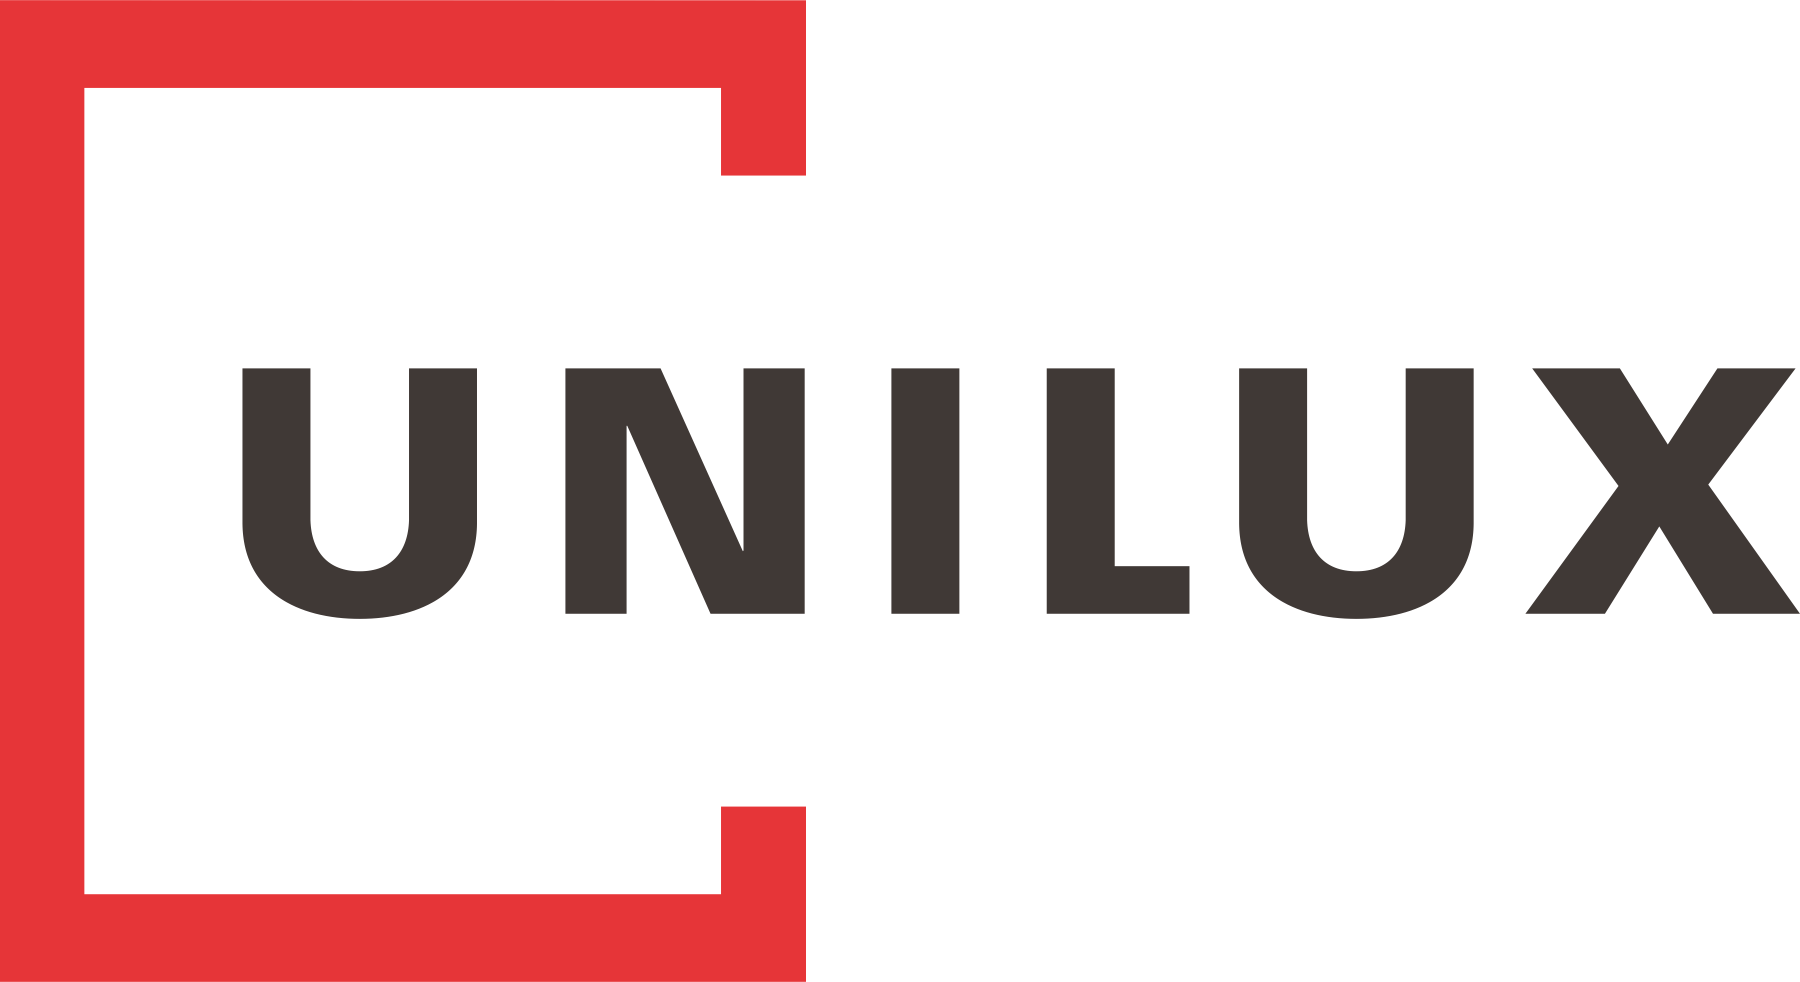 Das Unilux Logo in schwarzer Schrift und rotem Quadrat als Fenster angedeutet. Unilux ist unser Lieferant für Holzfenster und Holz-Aluminium-Fenster. Wir sind Ihr Unilux Partner in Saarbrücken und Saarlouis.